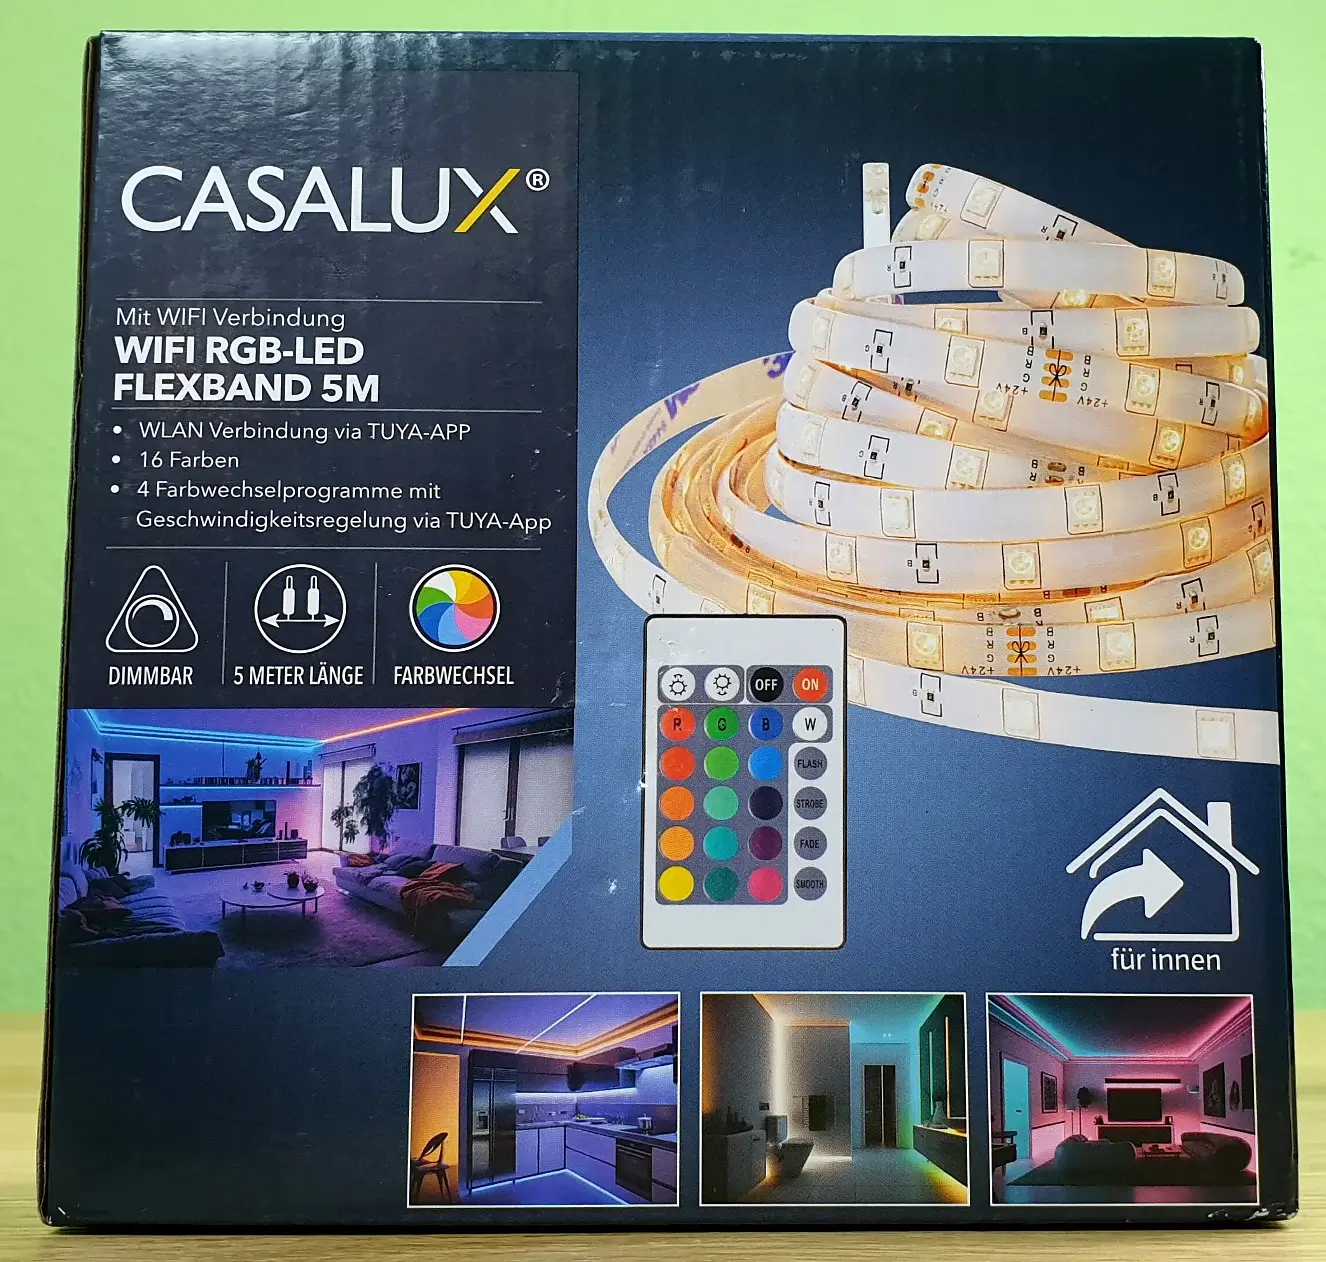 Ein Photo vom Casalux RGB-LED Flexband mit wifi Verbindung von vorne